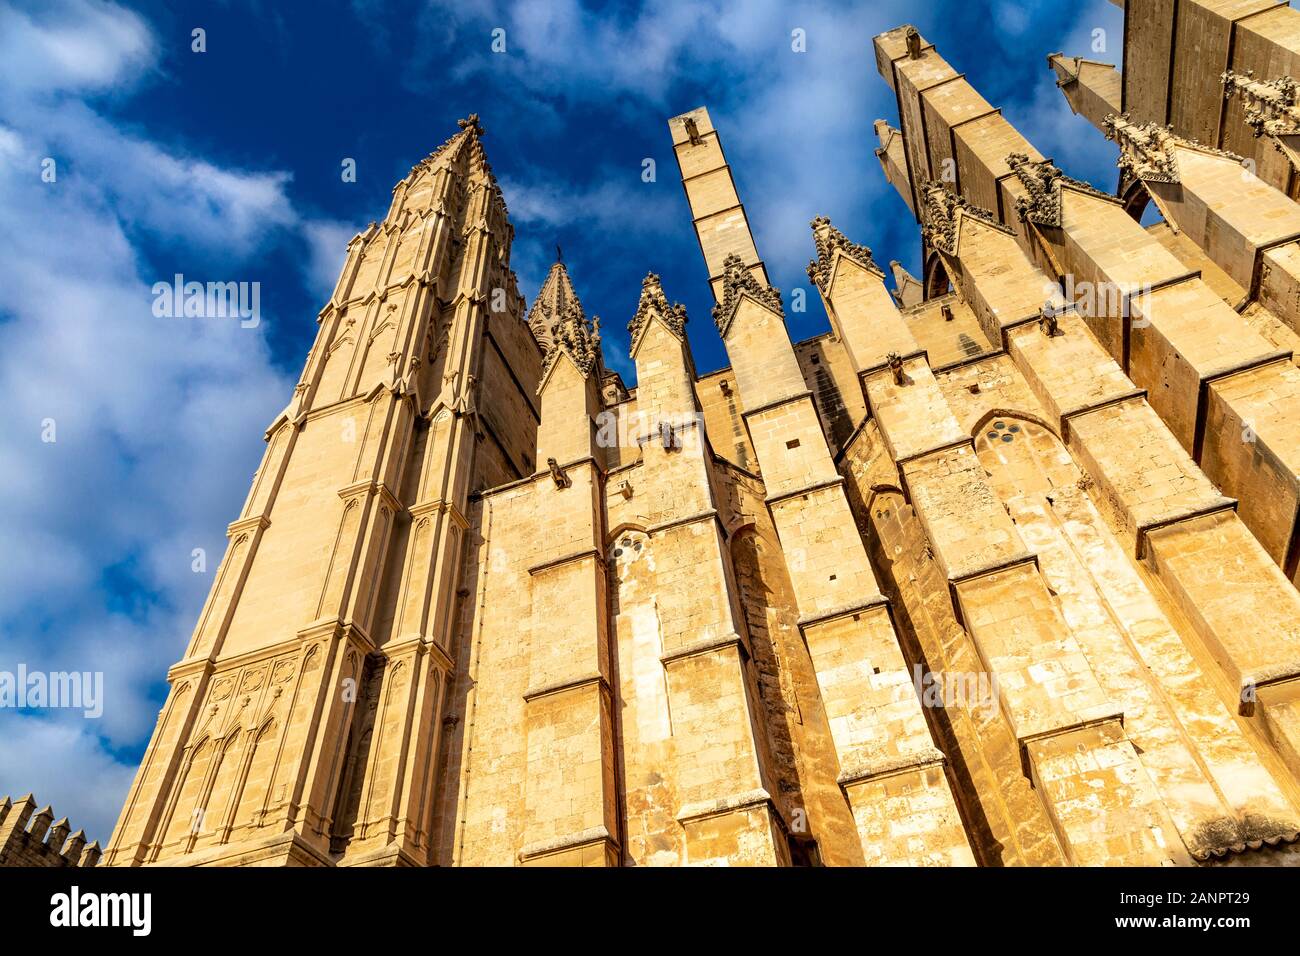 Extérieur de la cathédrale de Palma, Palma, Majorque, Espagne Banque D'Images